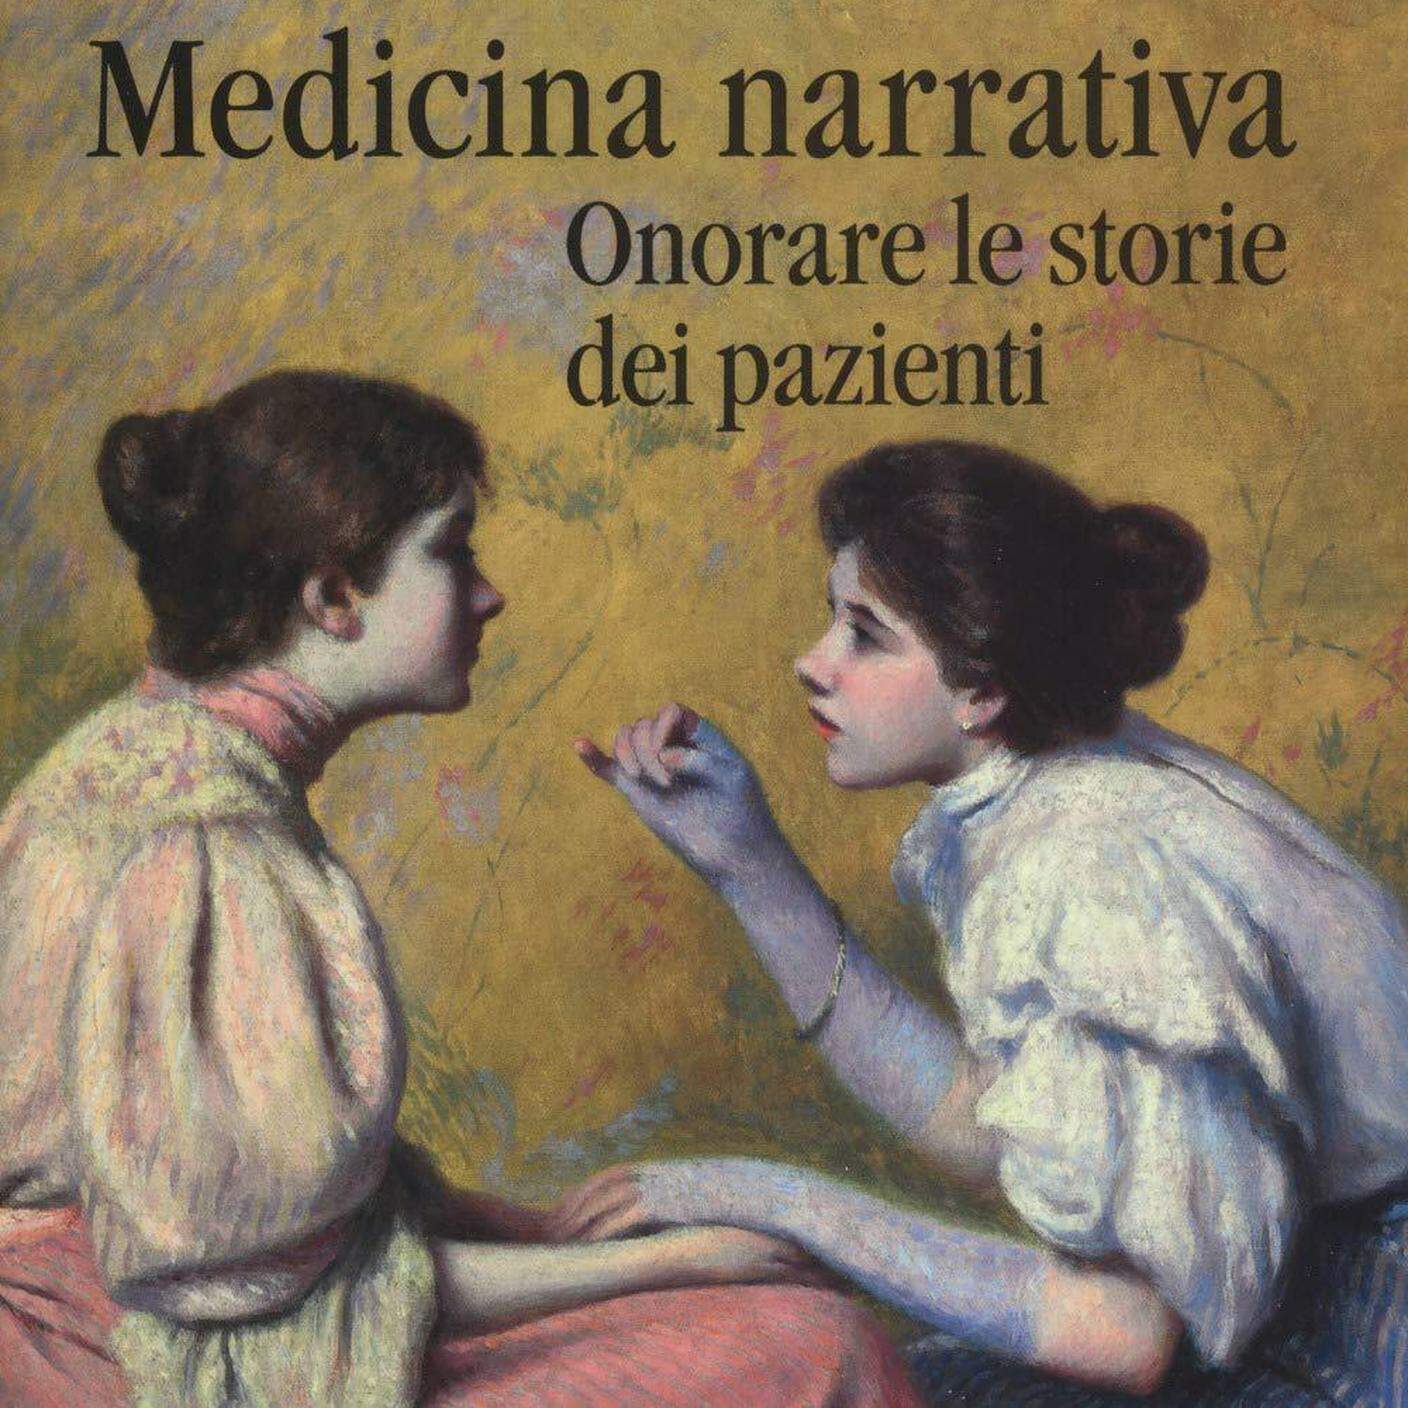 Rita Charon, "Medicina narrativa. Onorare le storie dei pazienti", Raffaello Cortina (dettaglio copertina)